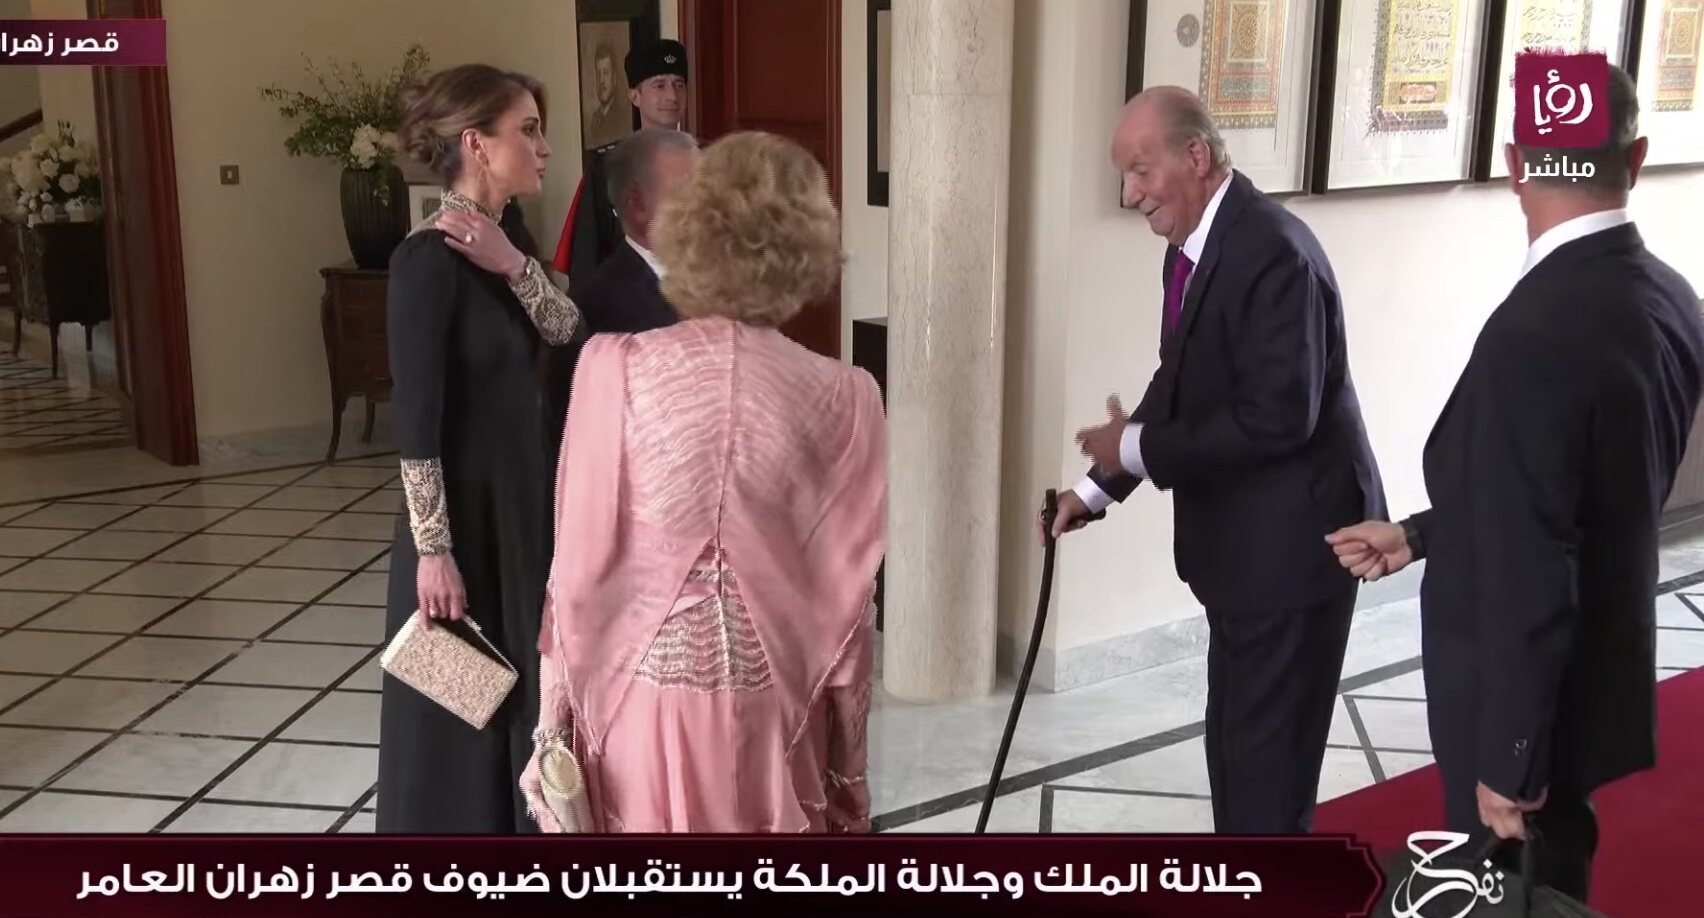 Los Reyes Juan Carlos y Sofía con Abdalá y Rania de Jordania en la boda de Hussein y Rajwa de Jordania